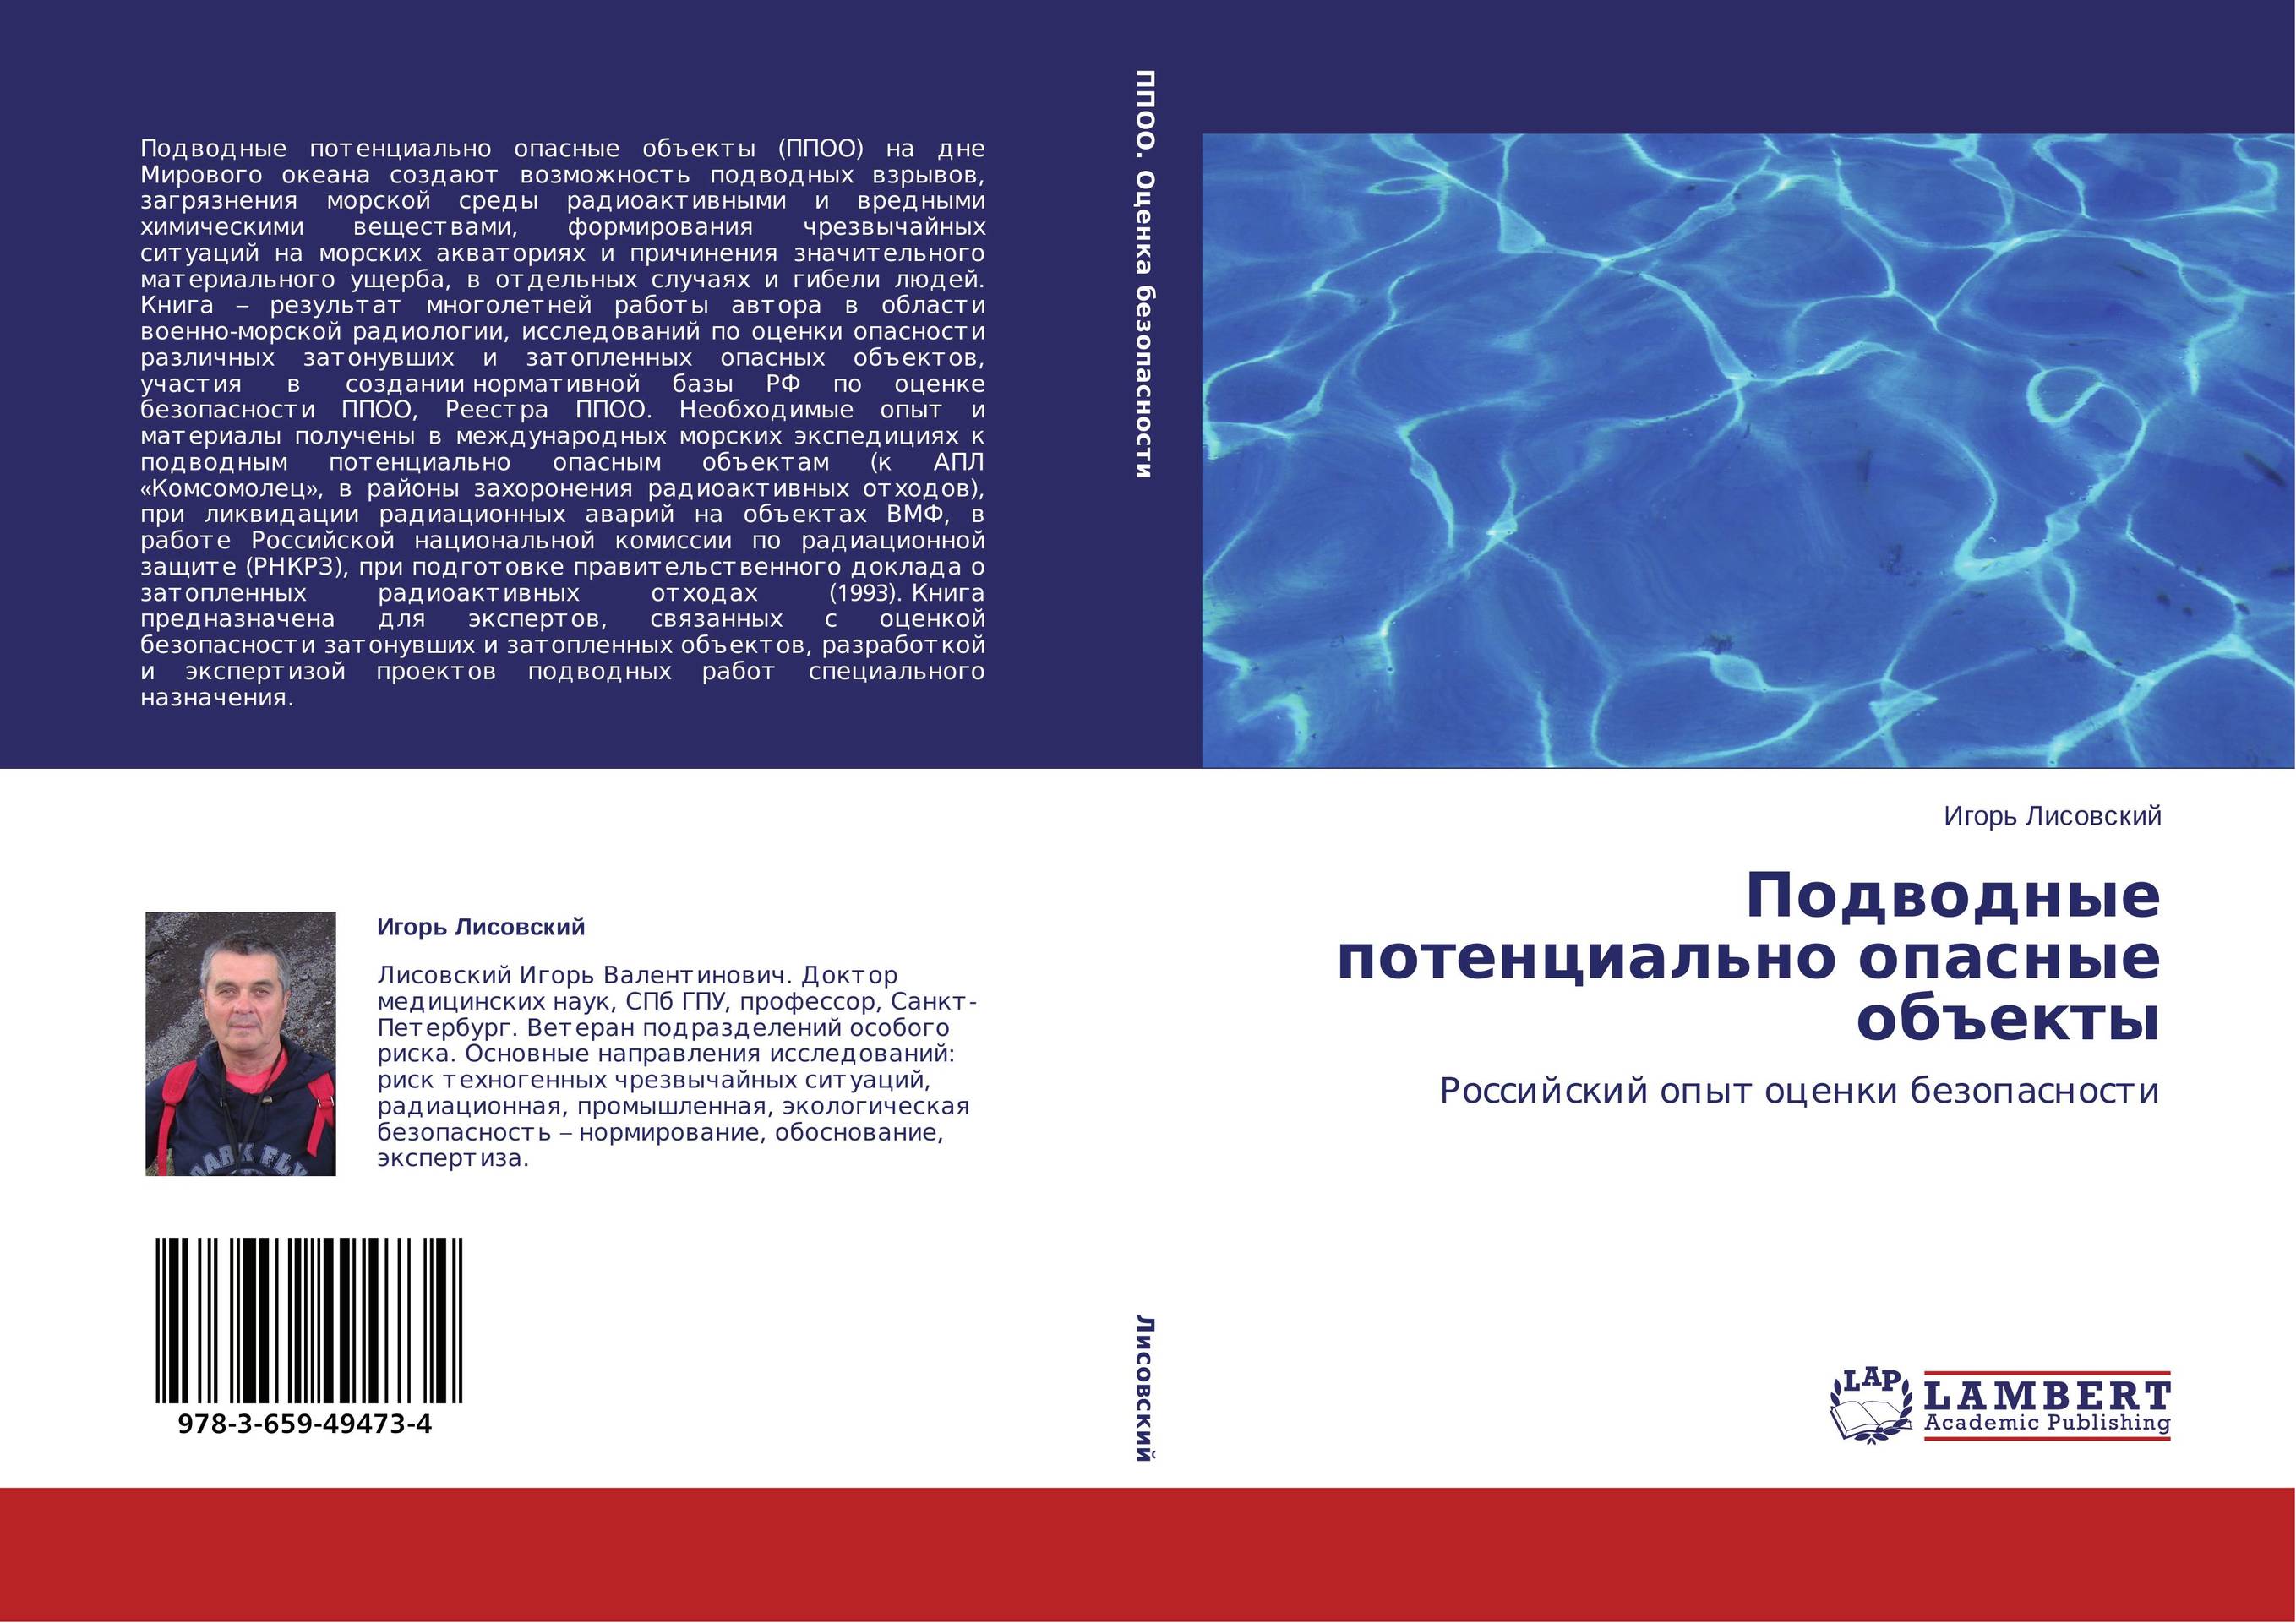 
        Подводные потенциально опасные объекты. Российский опыт оценки безопасности.
      